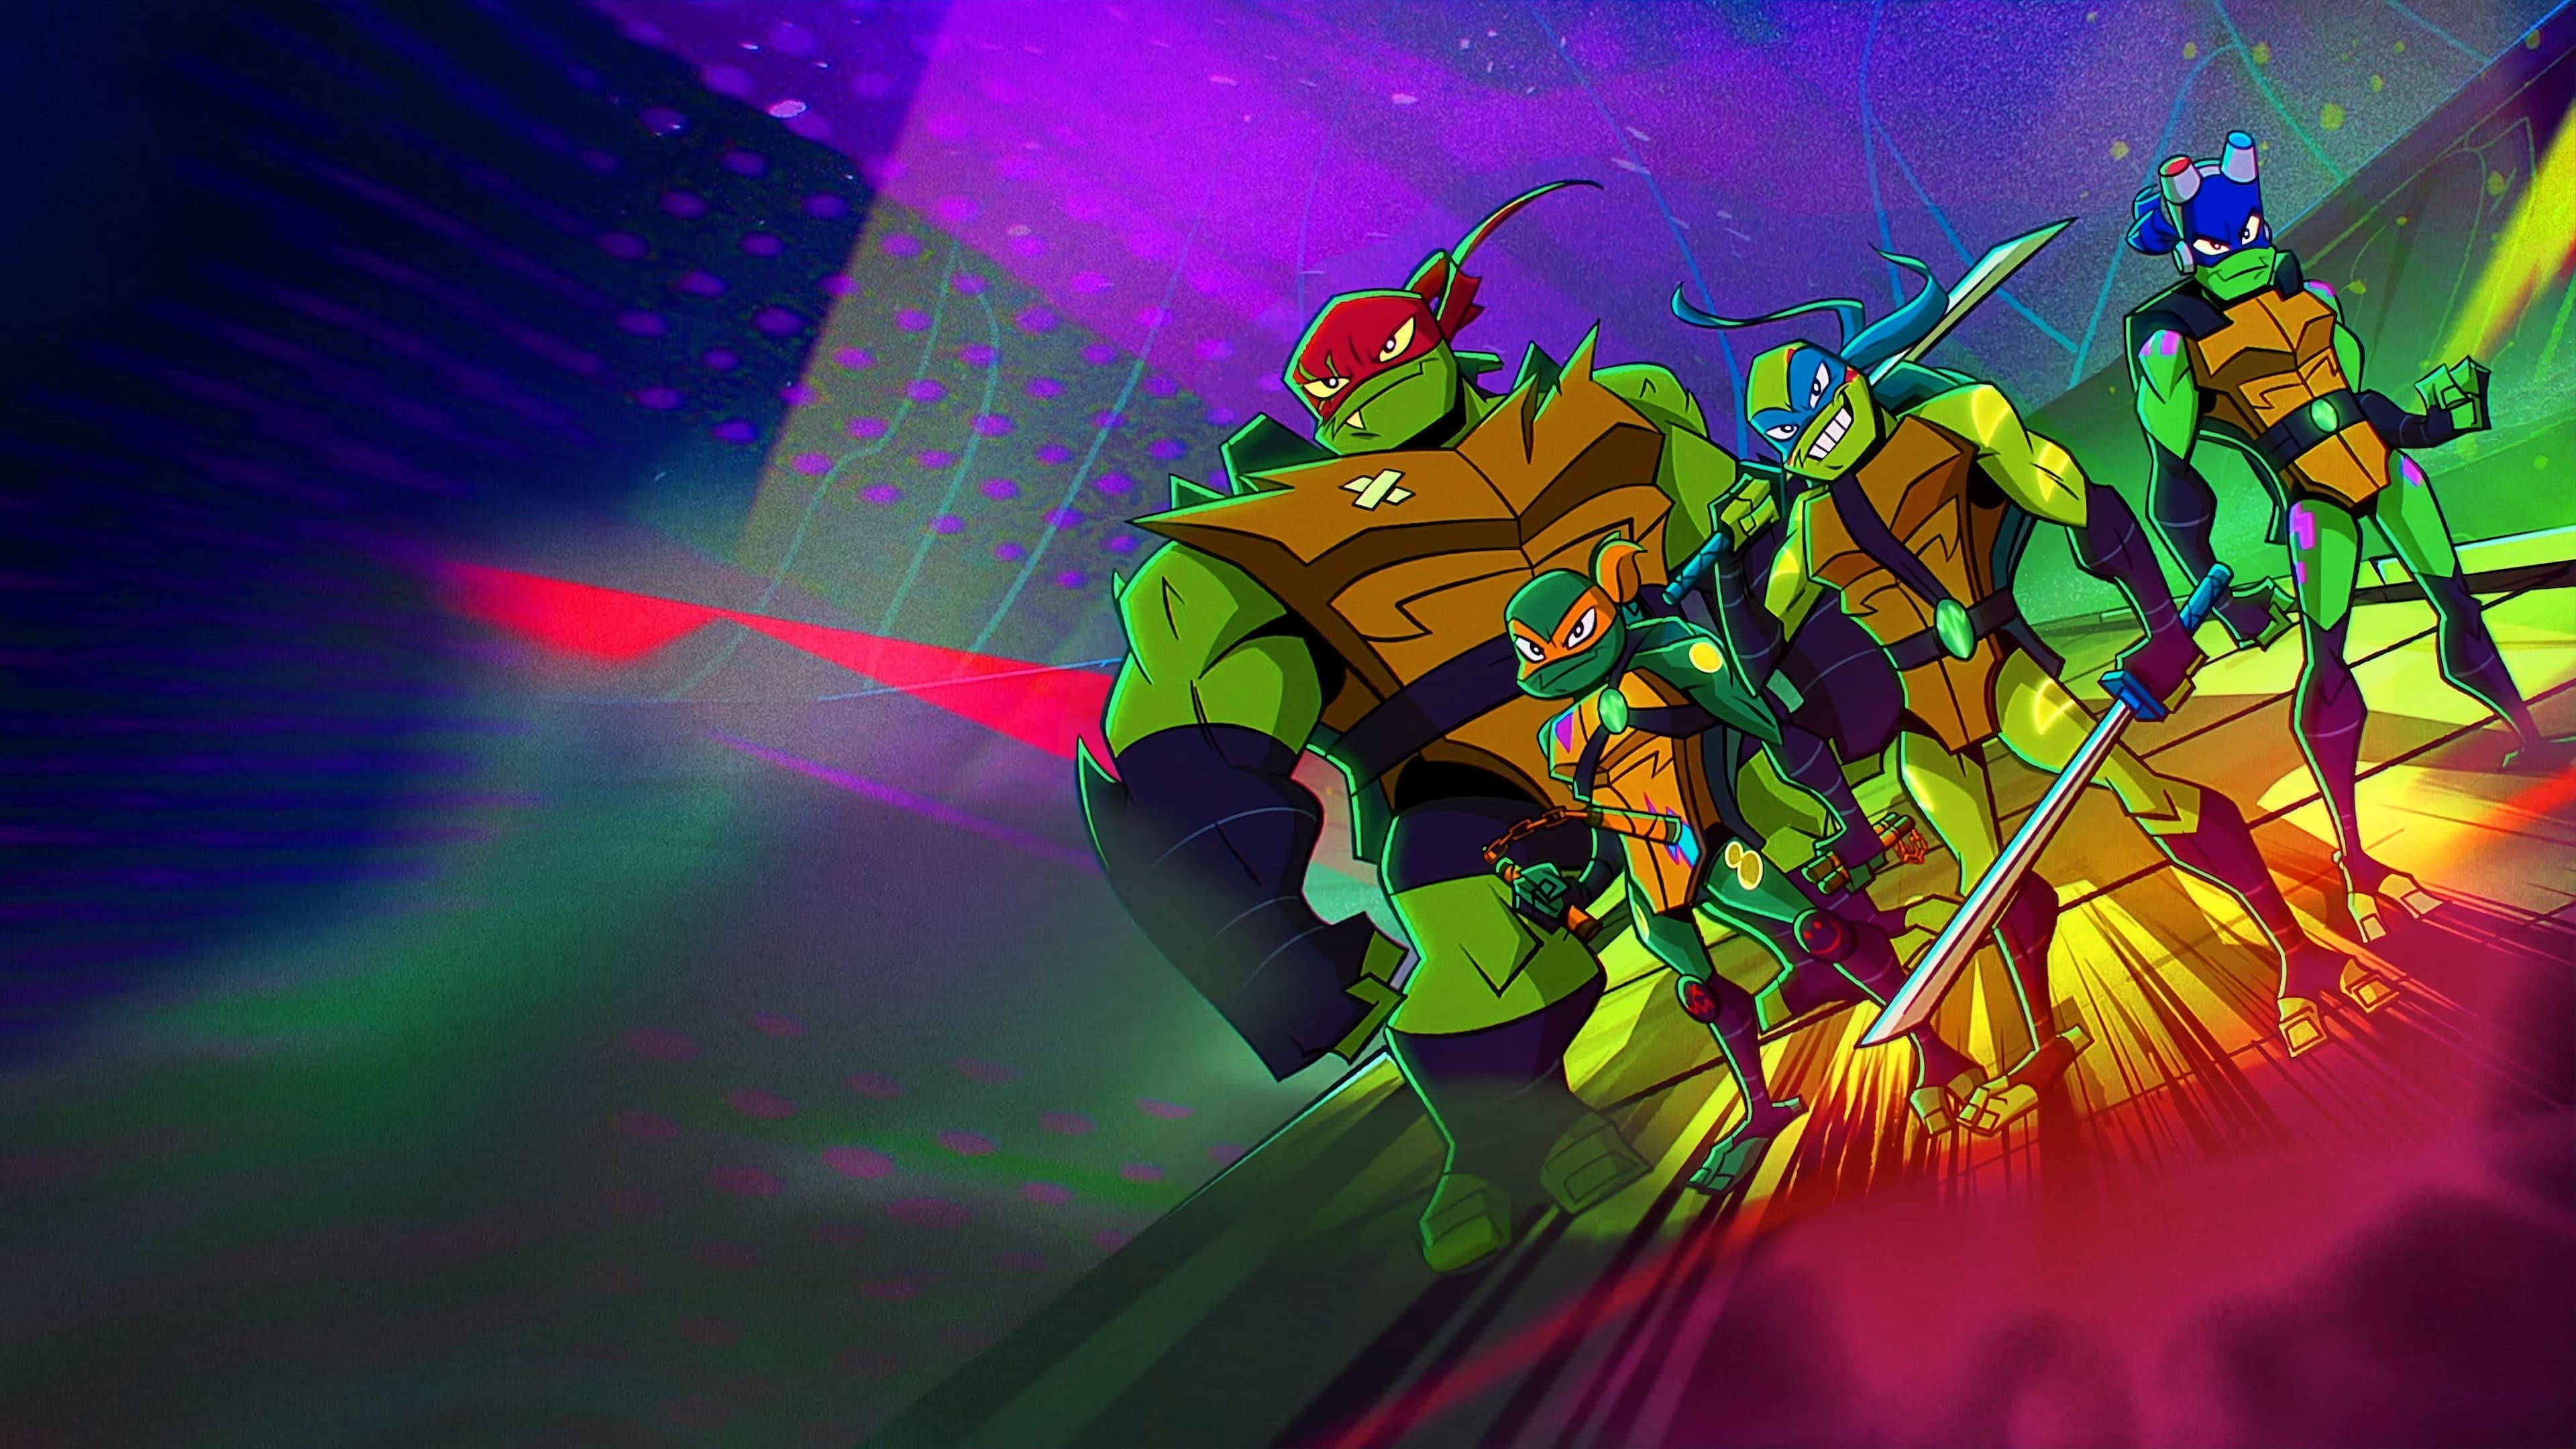 Rise of the Teenage Mutant Ninja Turtles: The Movie backdrop